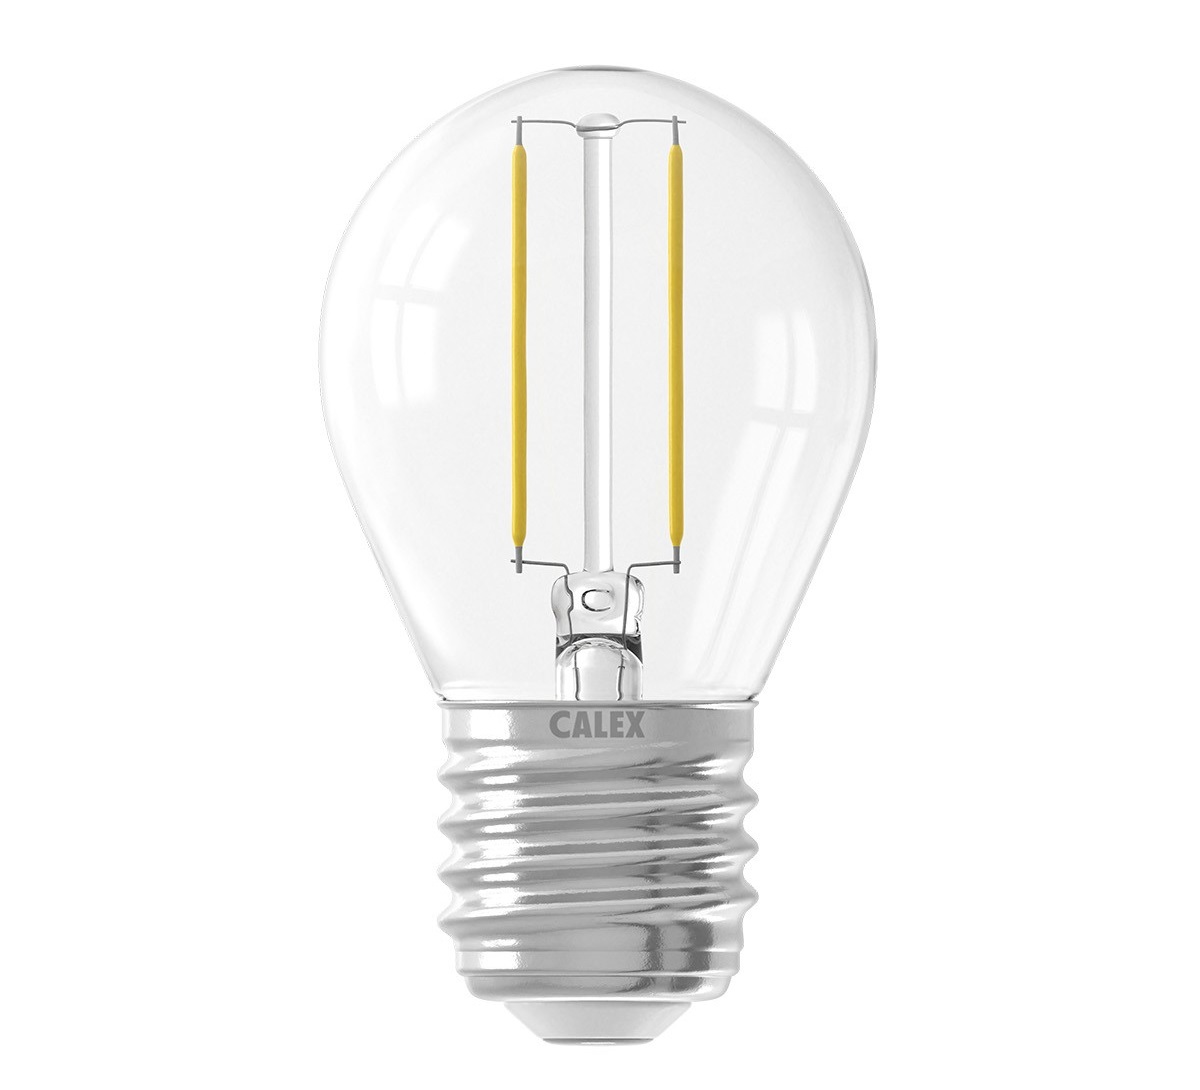 LED ball bulbs